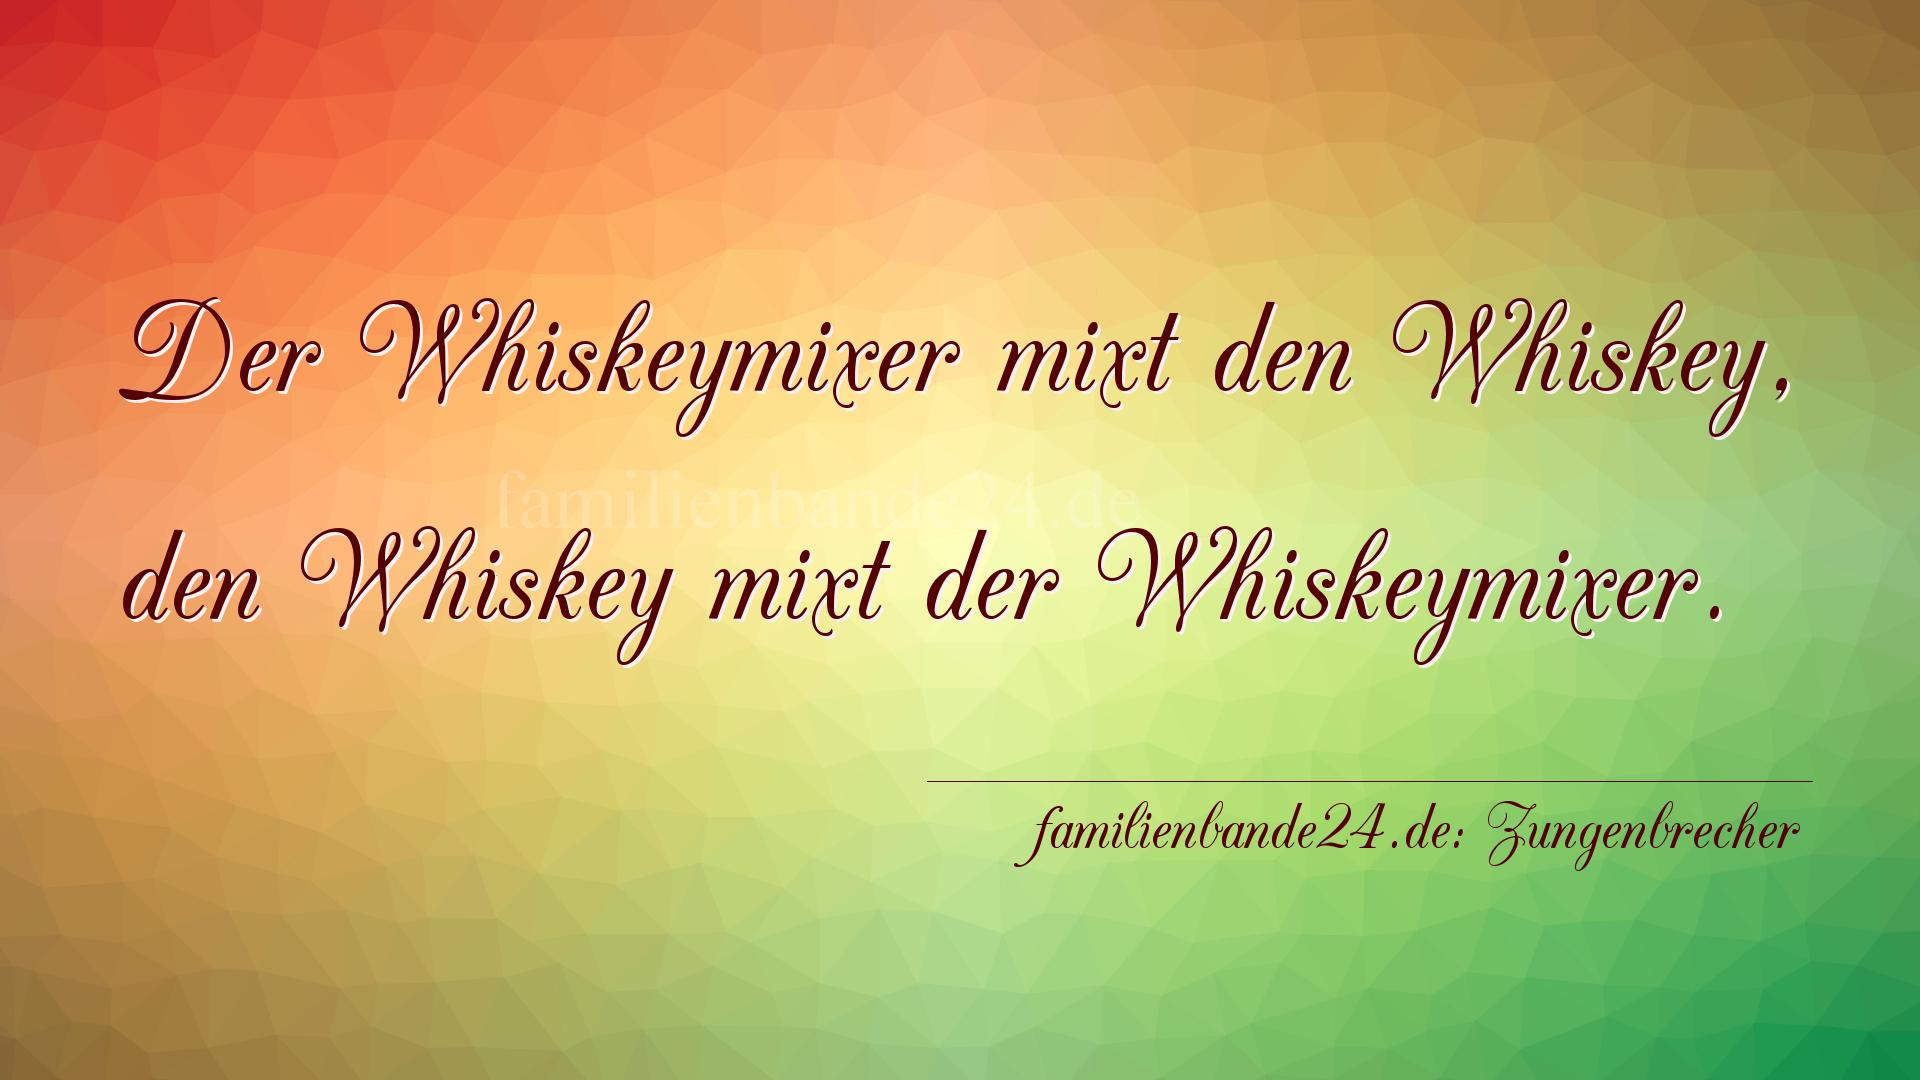 Zungenbrecher Nr. 2006: Der Whiskeymixer mixt den Whiskey,
den Whiskey mixt der W [...]